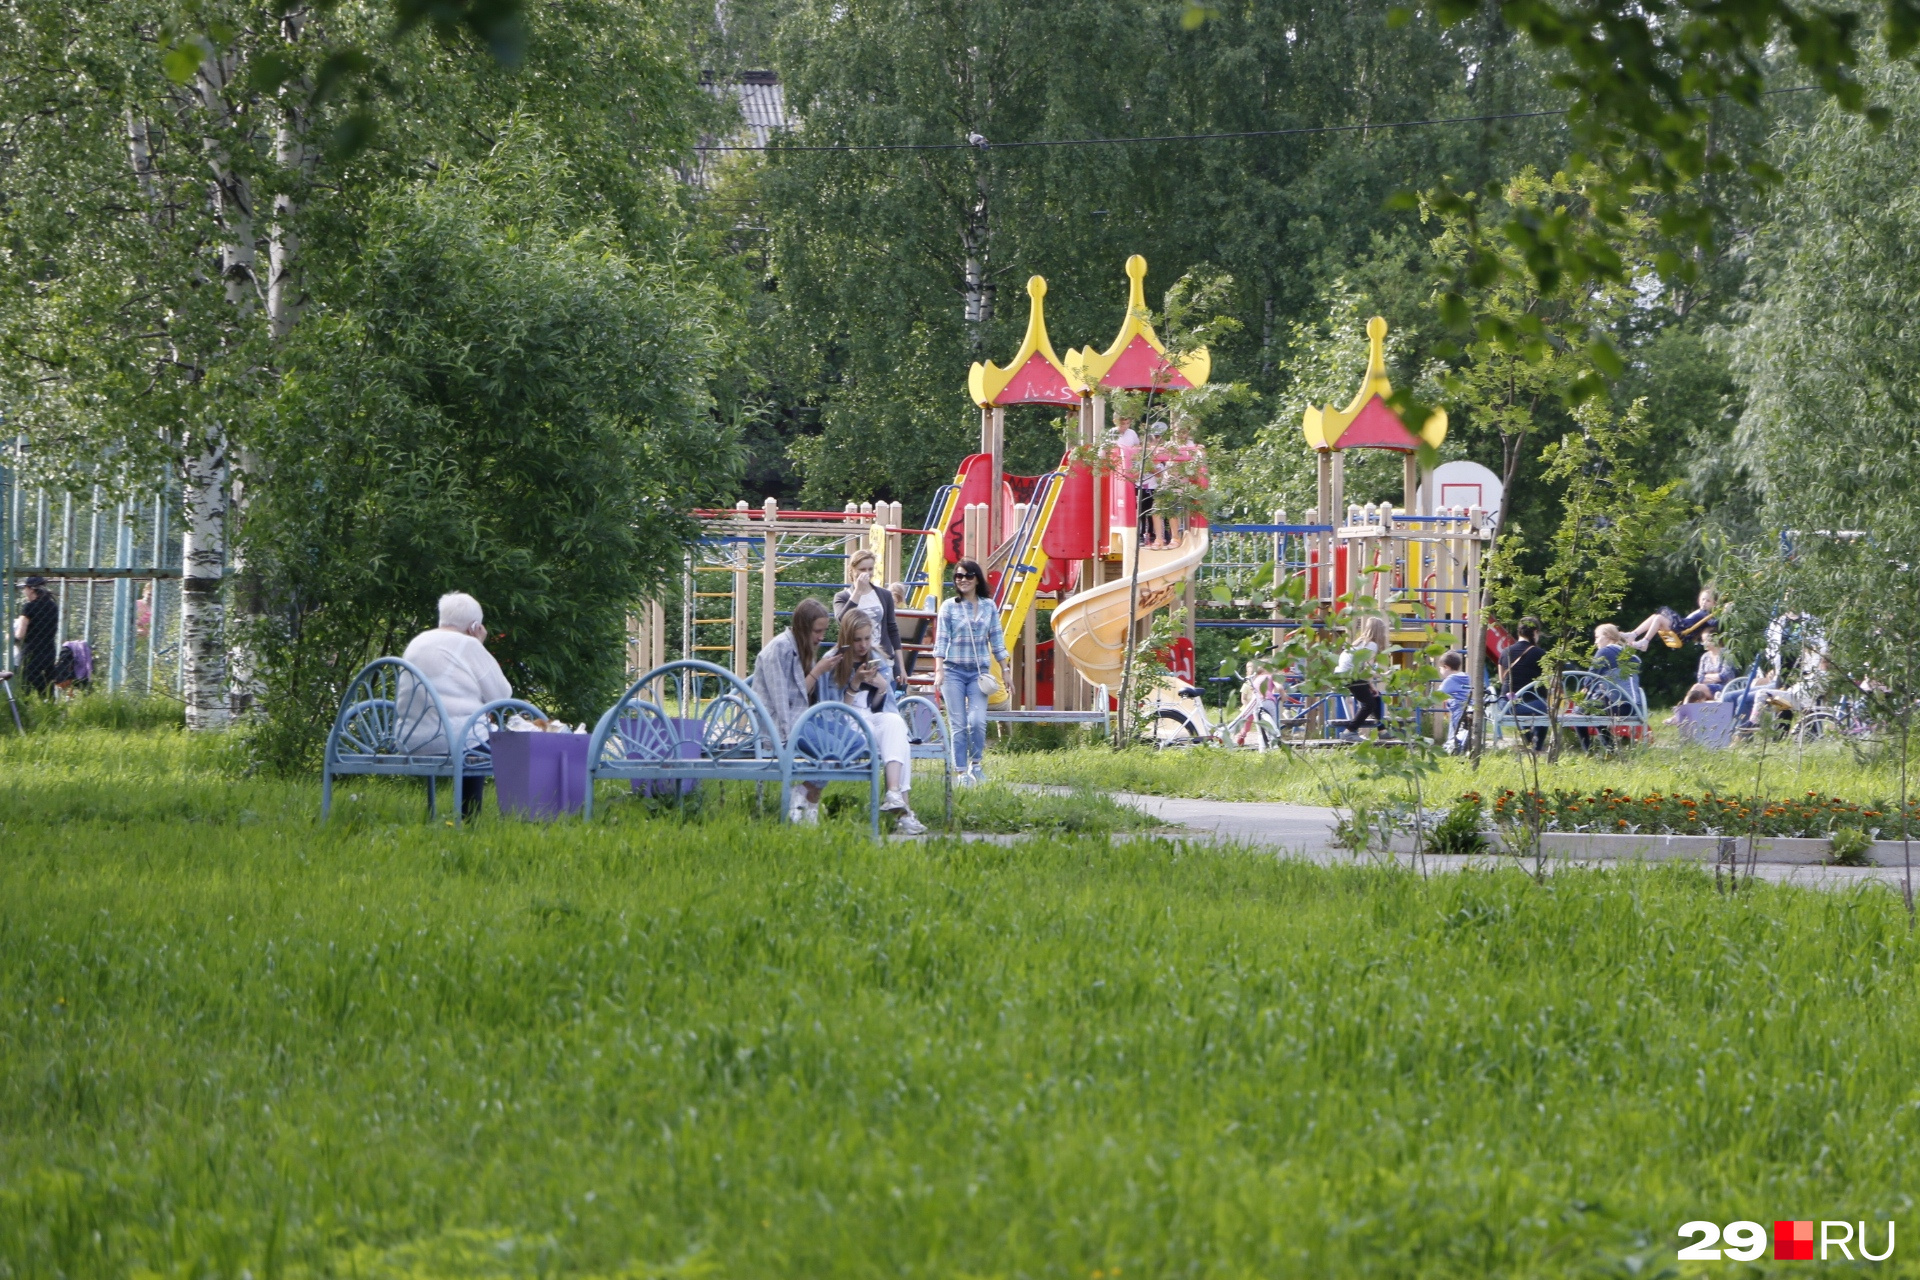 Ломоносовский парк — ещё одно излюбленное место для детей и родителей, и более спокойное